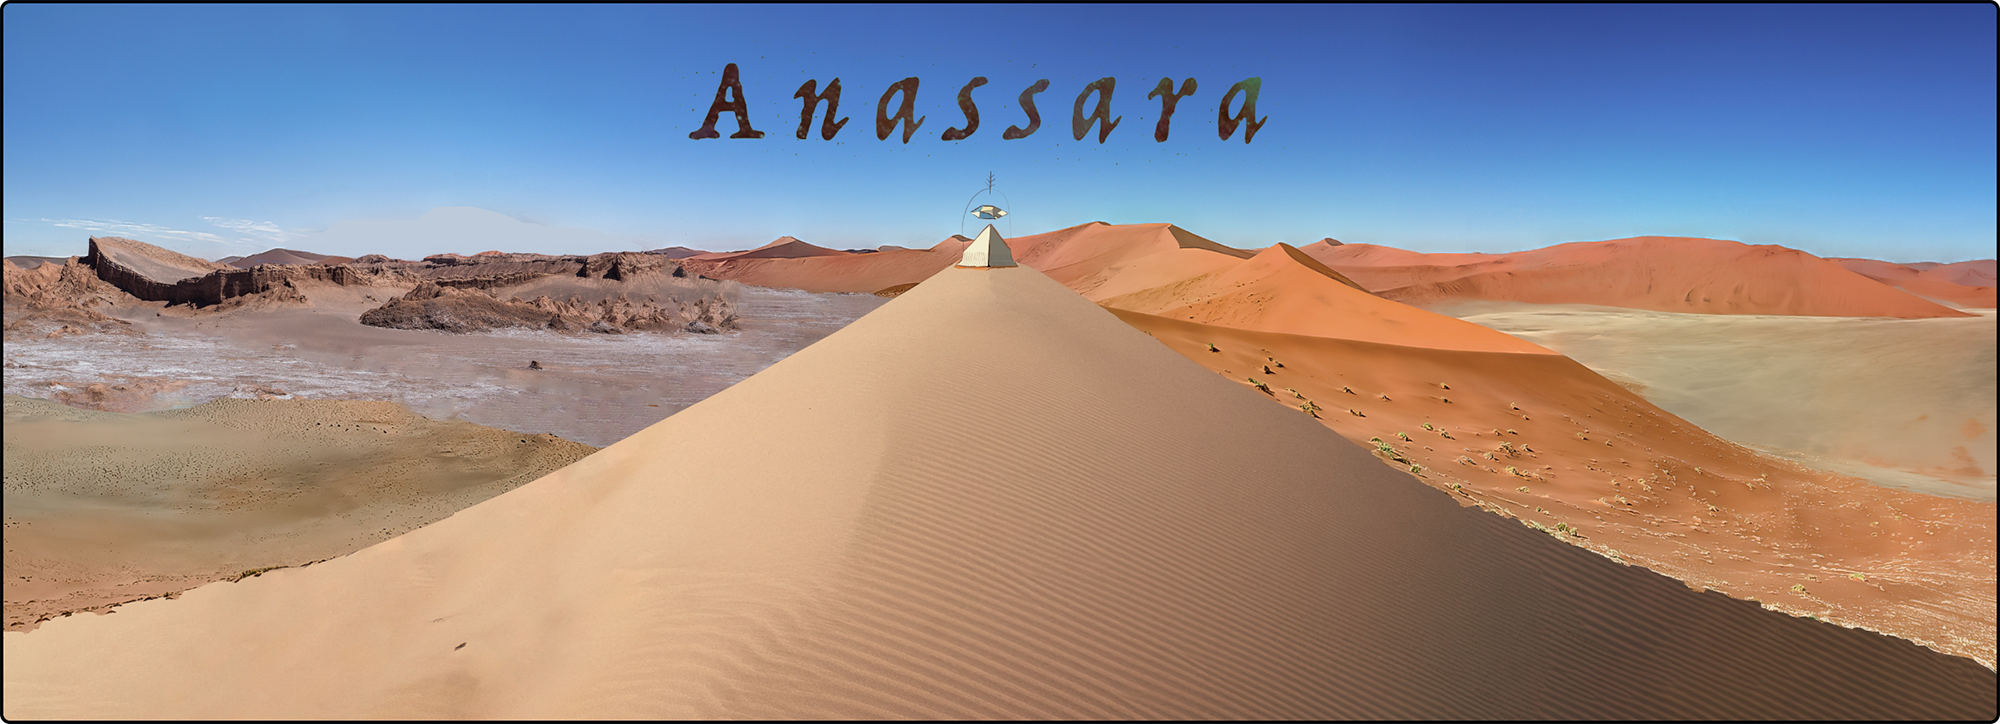 Anassara